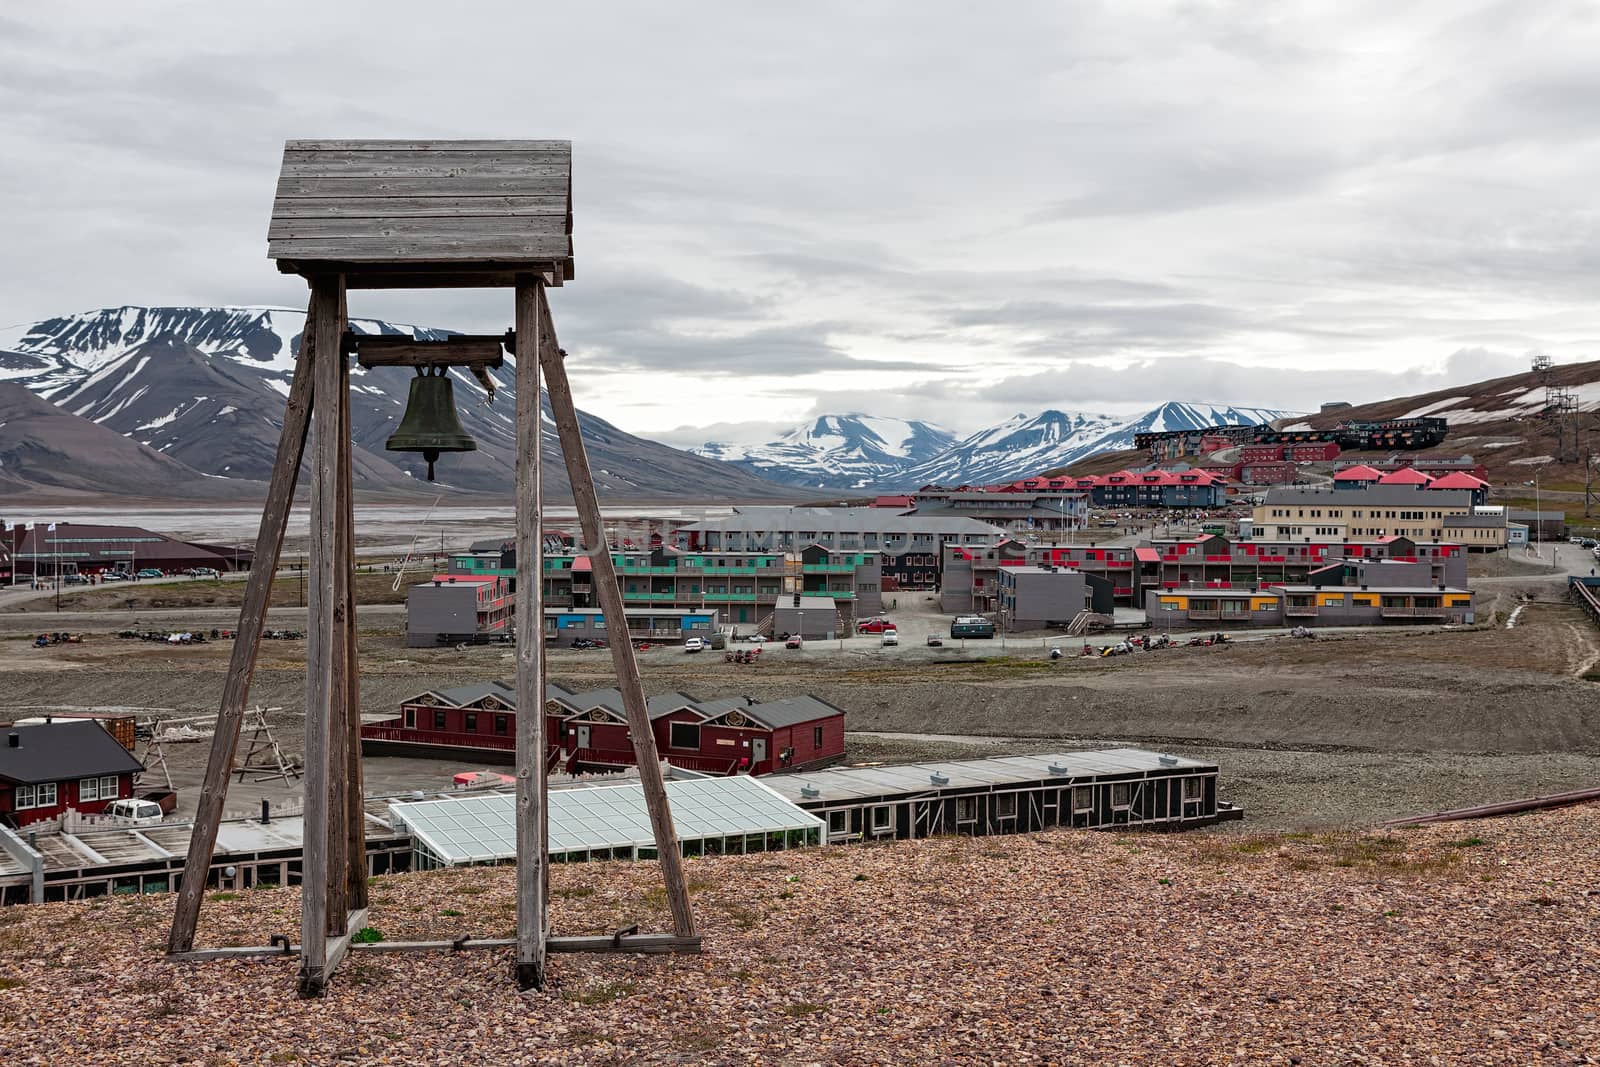 Bell tower in Longyearbyen, Norway by LuigiMorbidelli